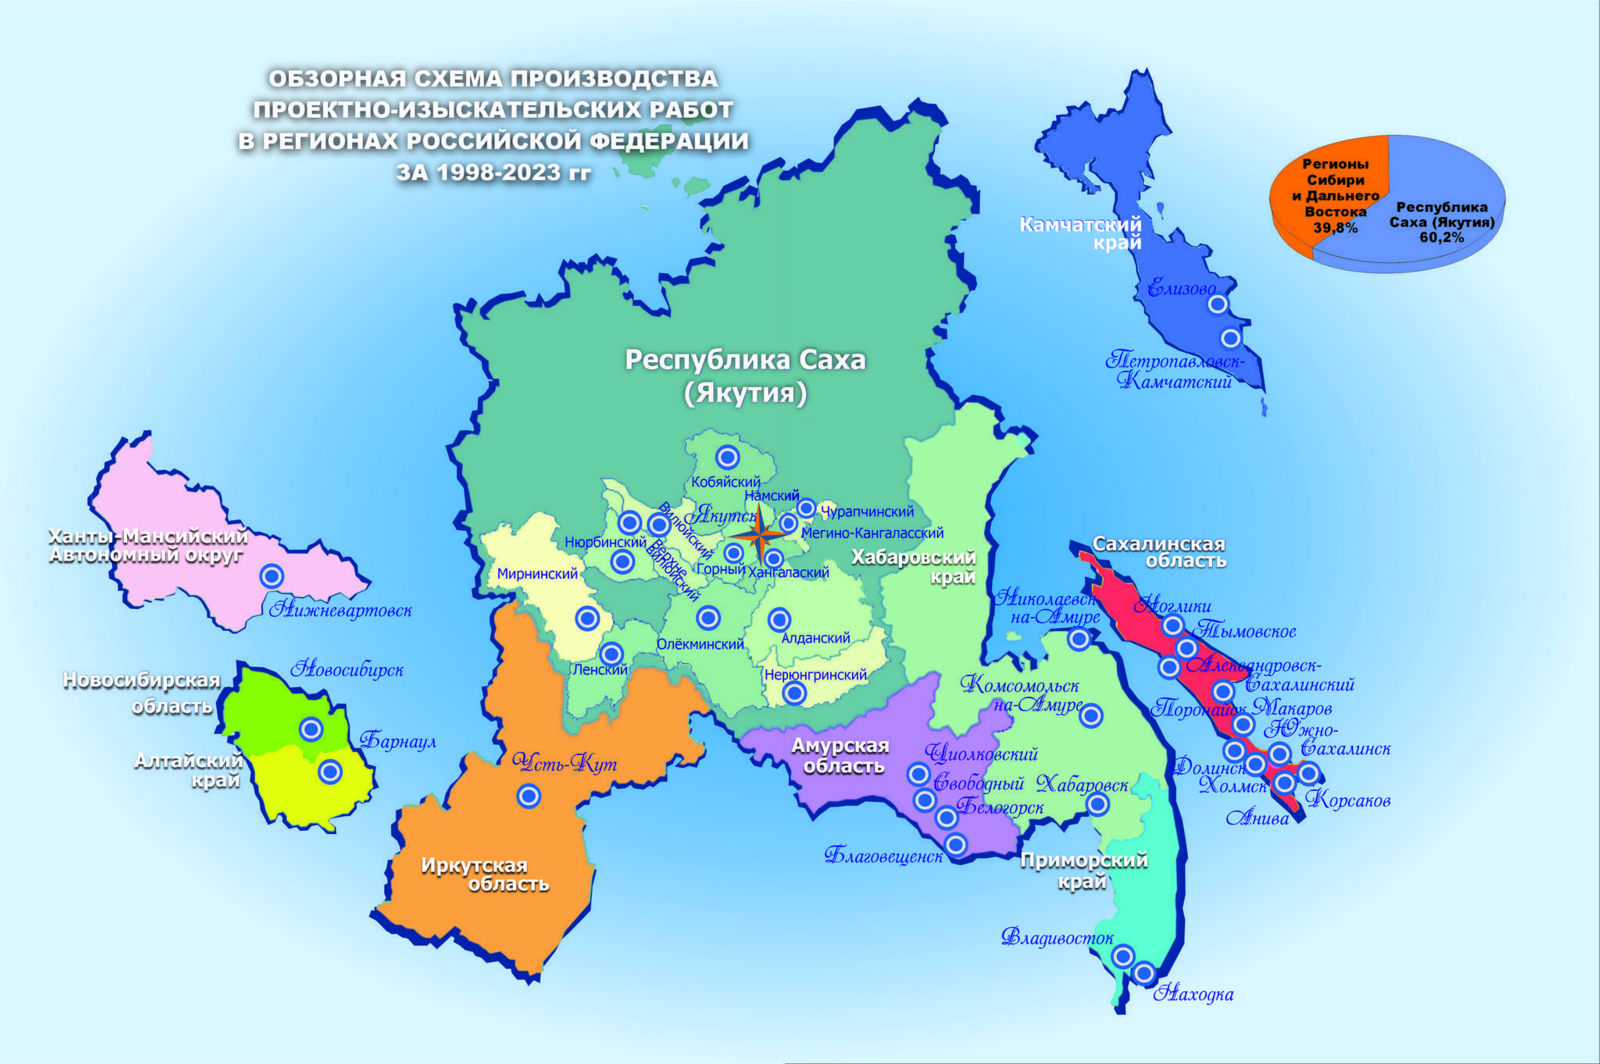 Обзорная схема производства проектно-изыскательских работ в регионах РФ за 1998-2023 гг.